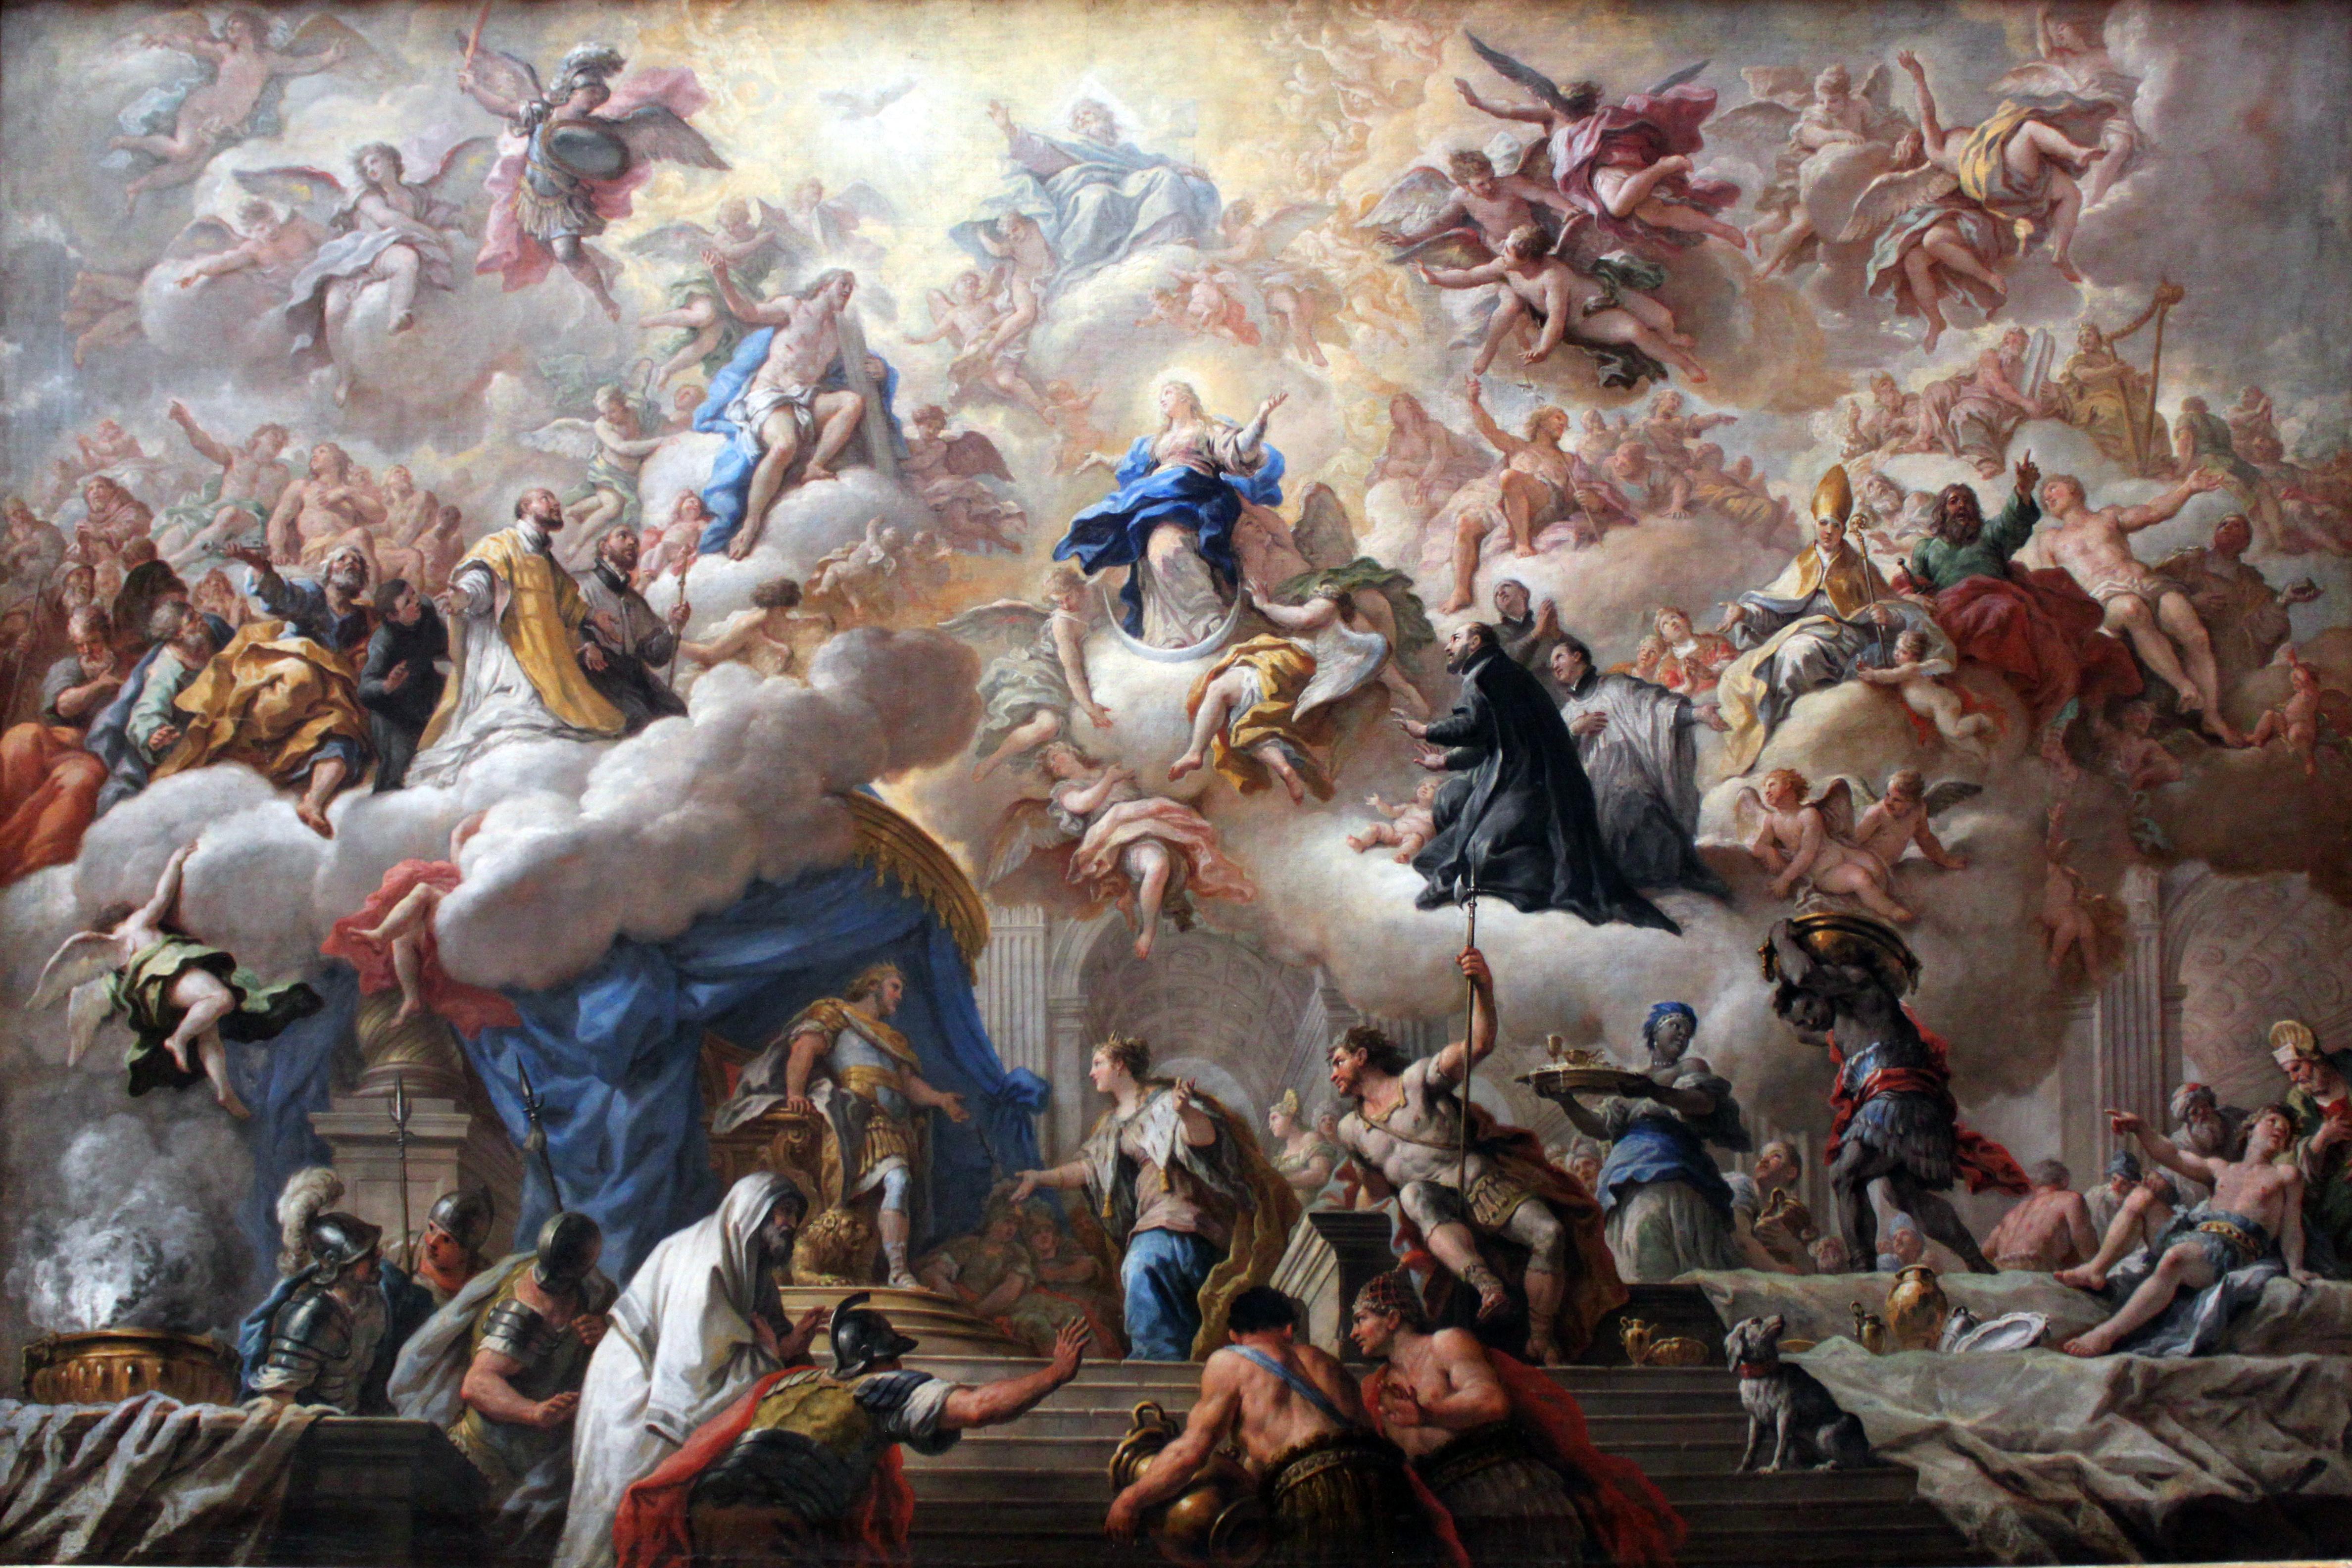 Baroque Art paintings